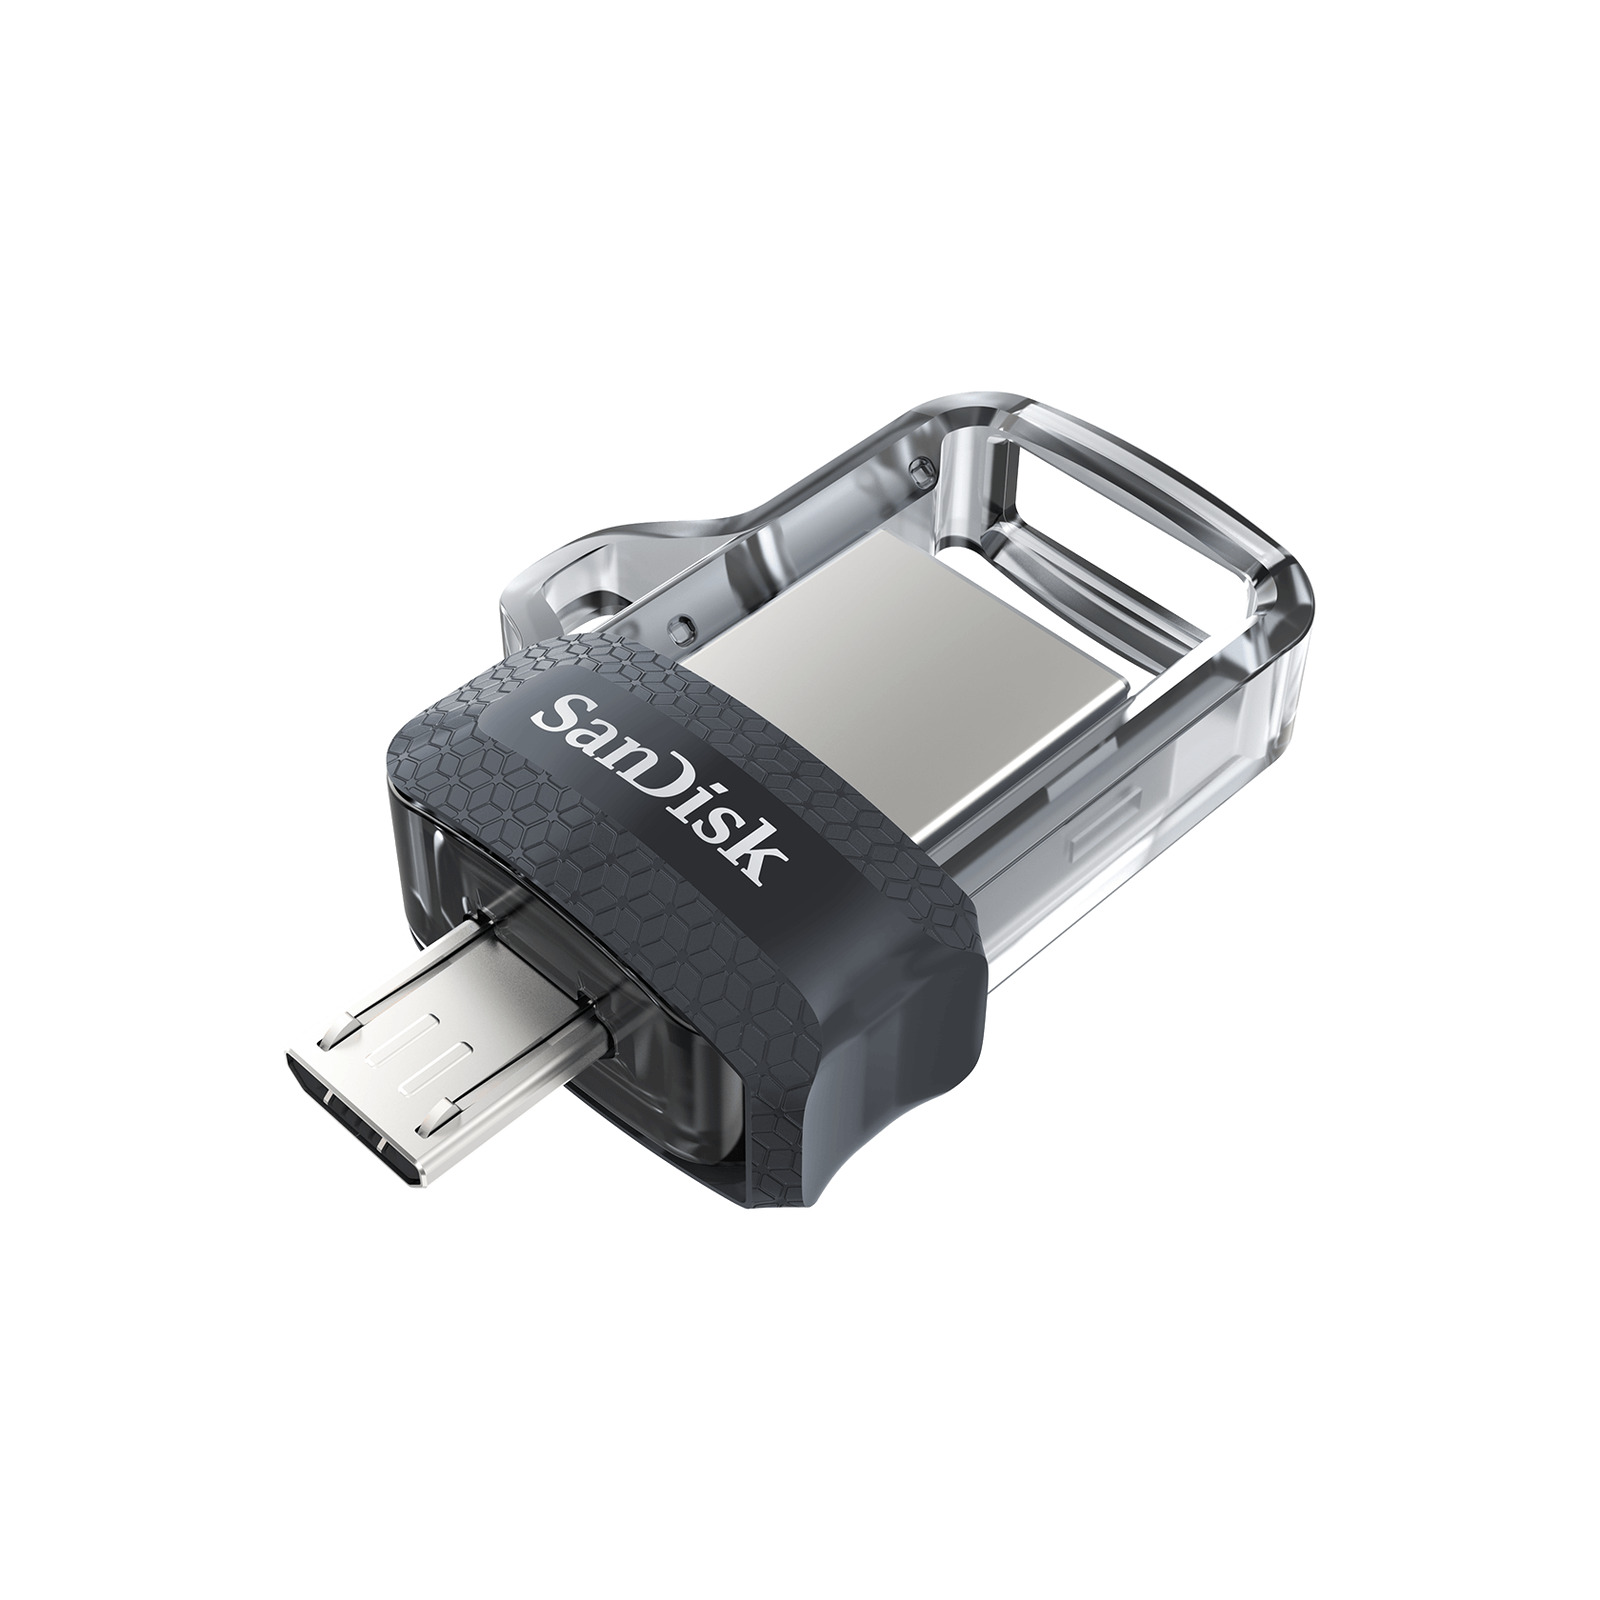 SanDisk 32GB Ultra Dual Drive m3.0 micro-USB USB 3.0 Flash Drive SDDD3-032G-G46